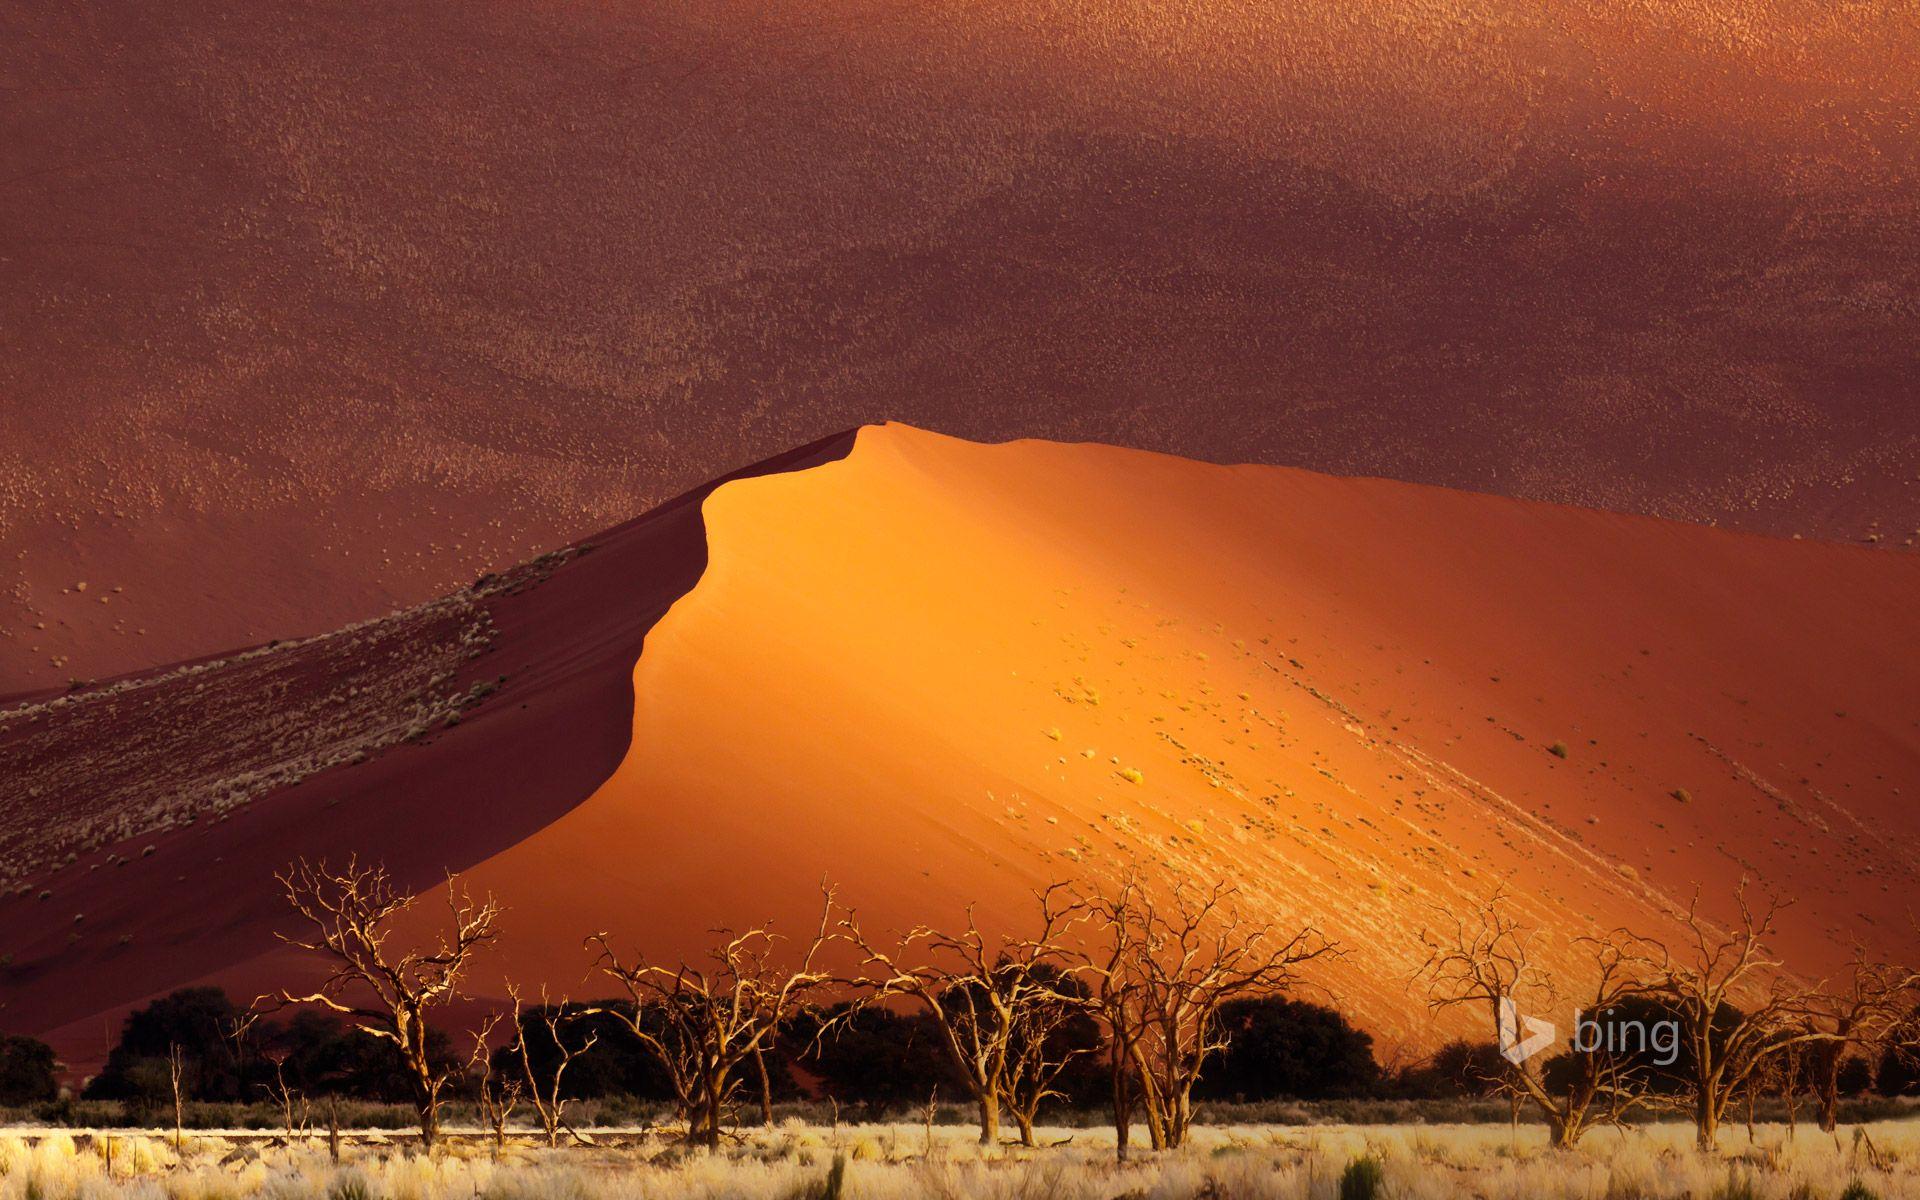 Sand dune, Sossusvlei, Namibia